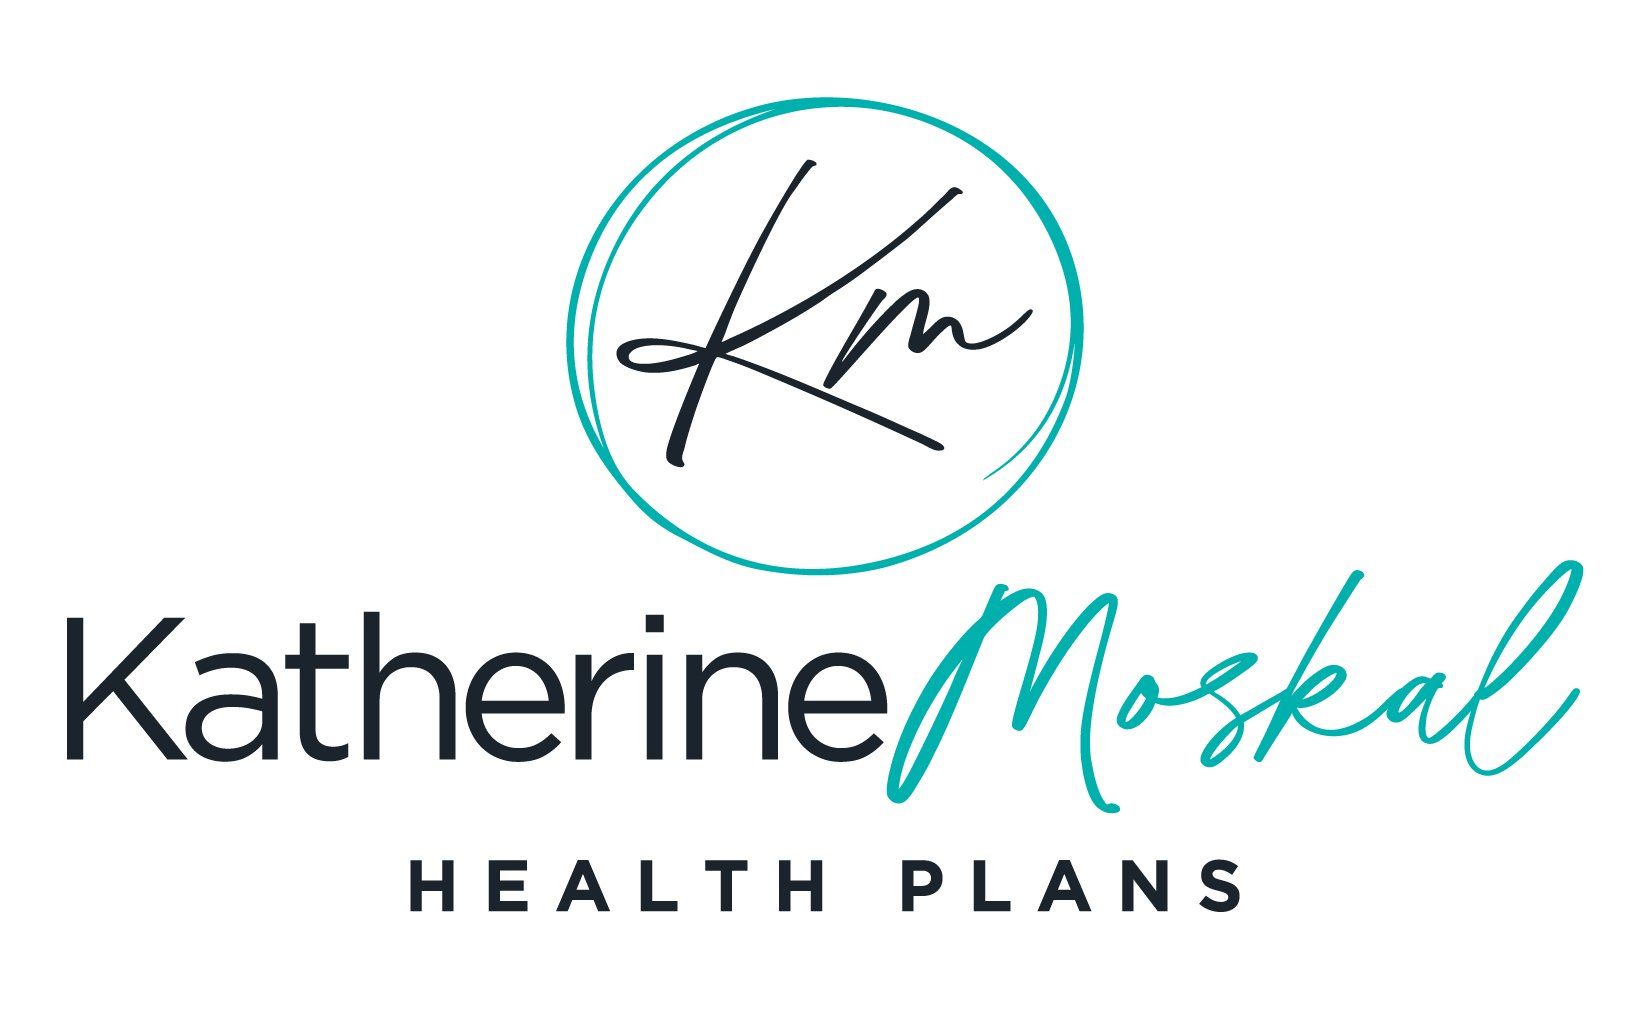 Katherine Moskal Health Plans